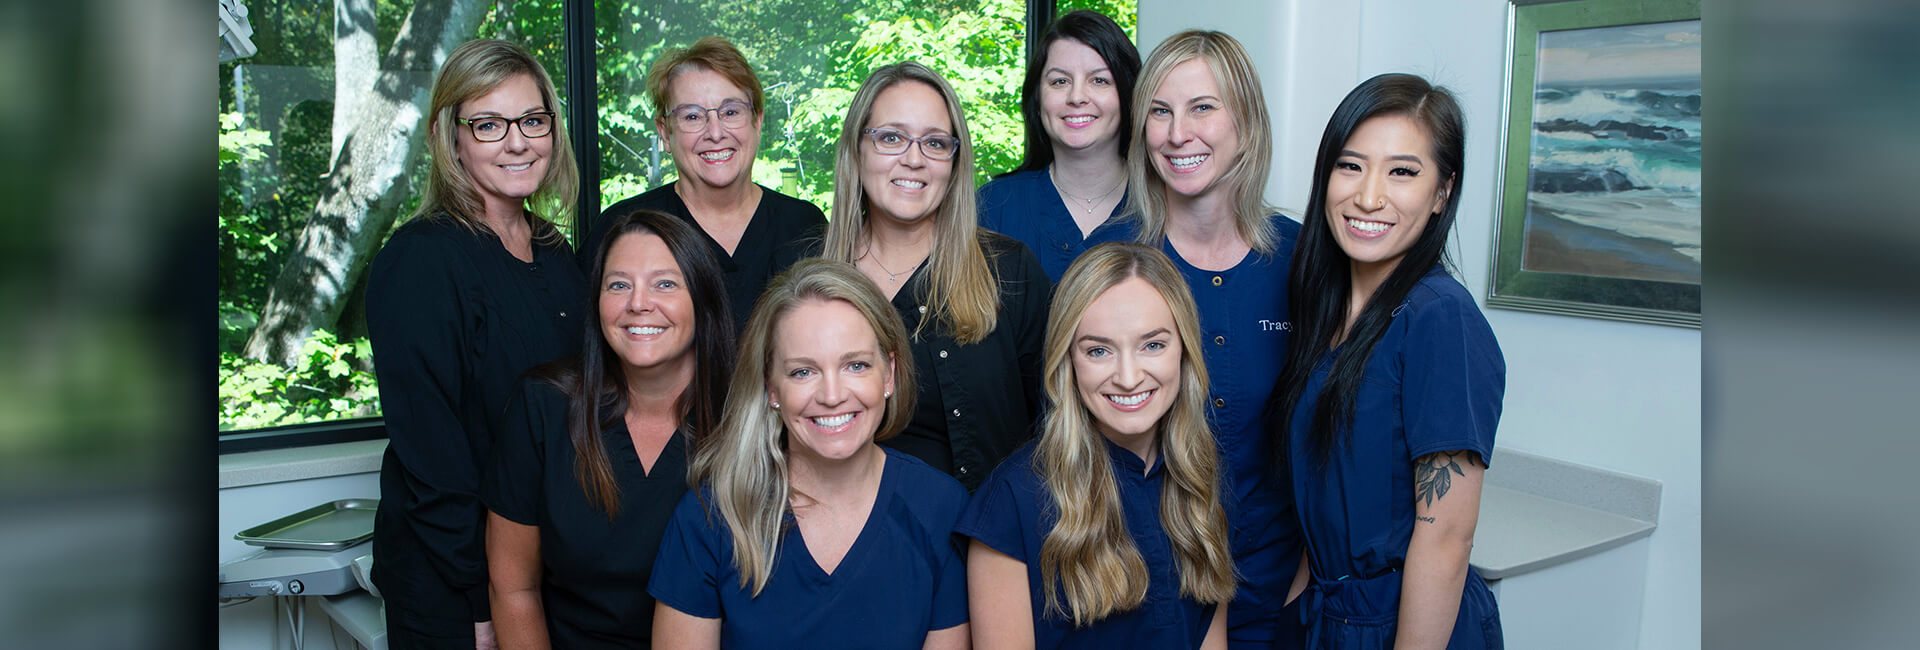 Meet the Team | Peachtree Corners Dental Associates - Georgia